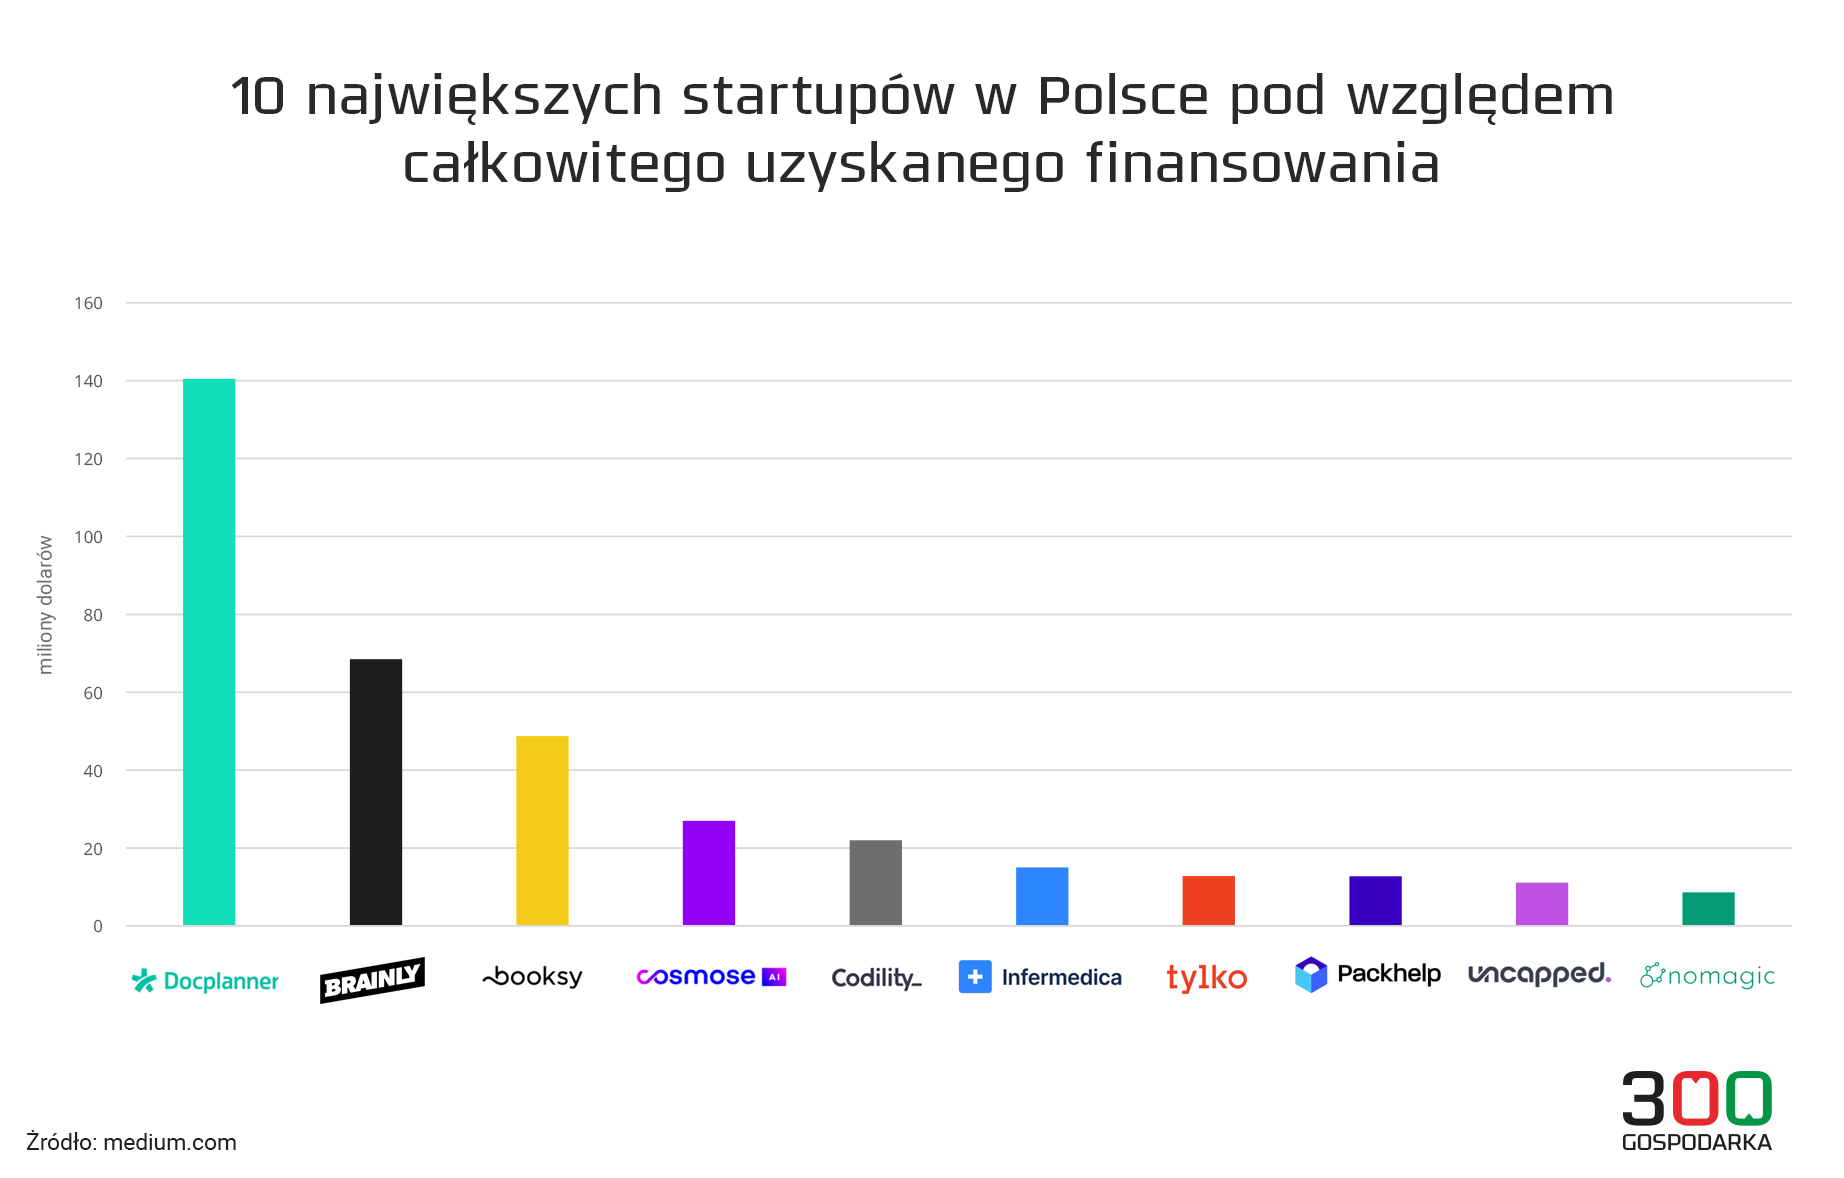 10 największych startupów w Polsce pod względem całkowitego uzyskanego finansowania